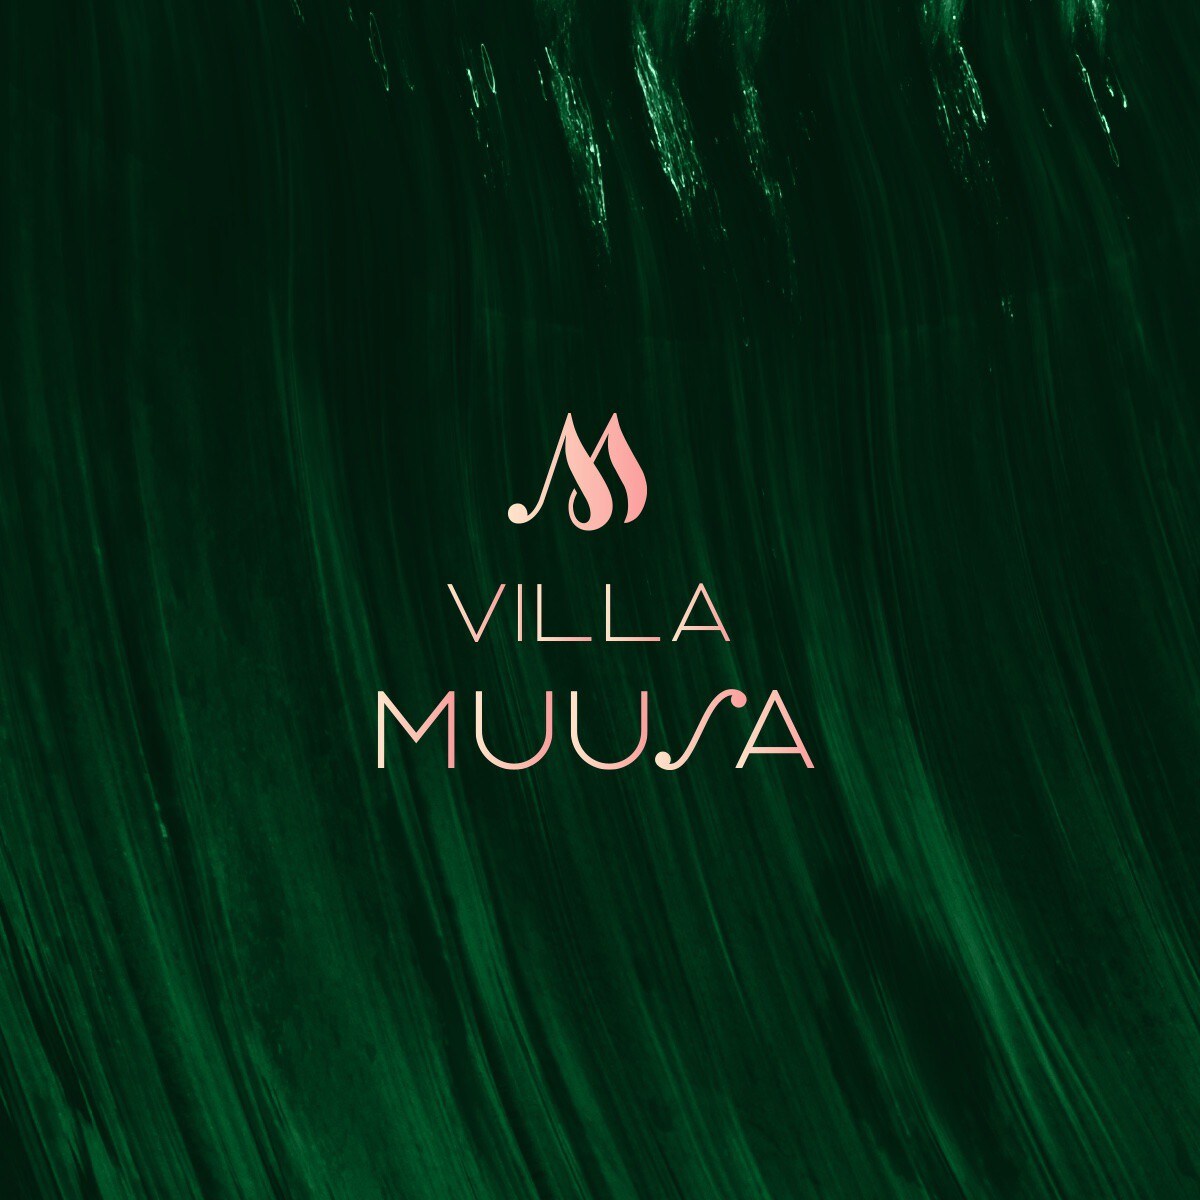 Villa Muusa